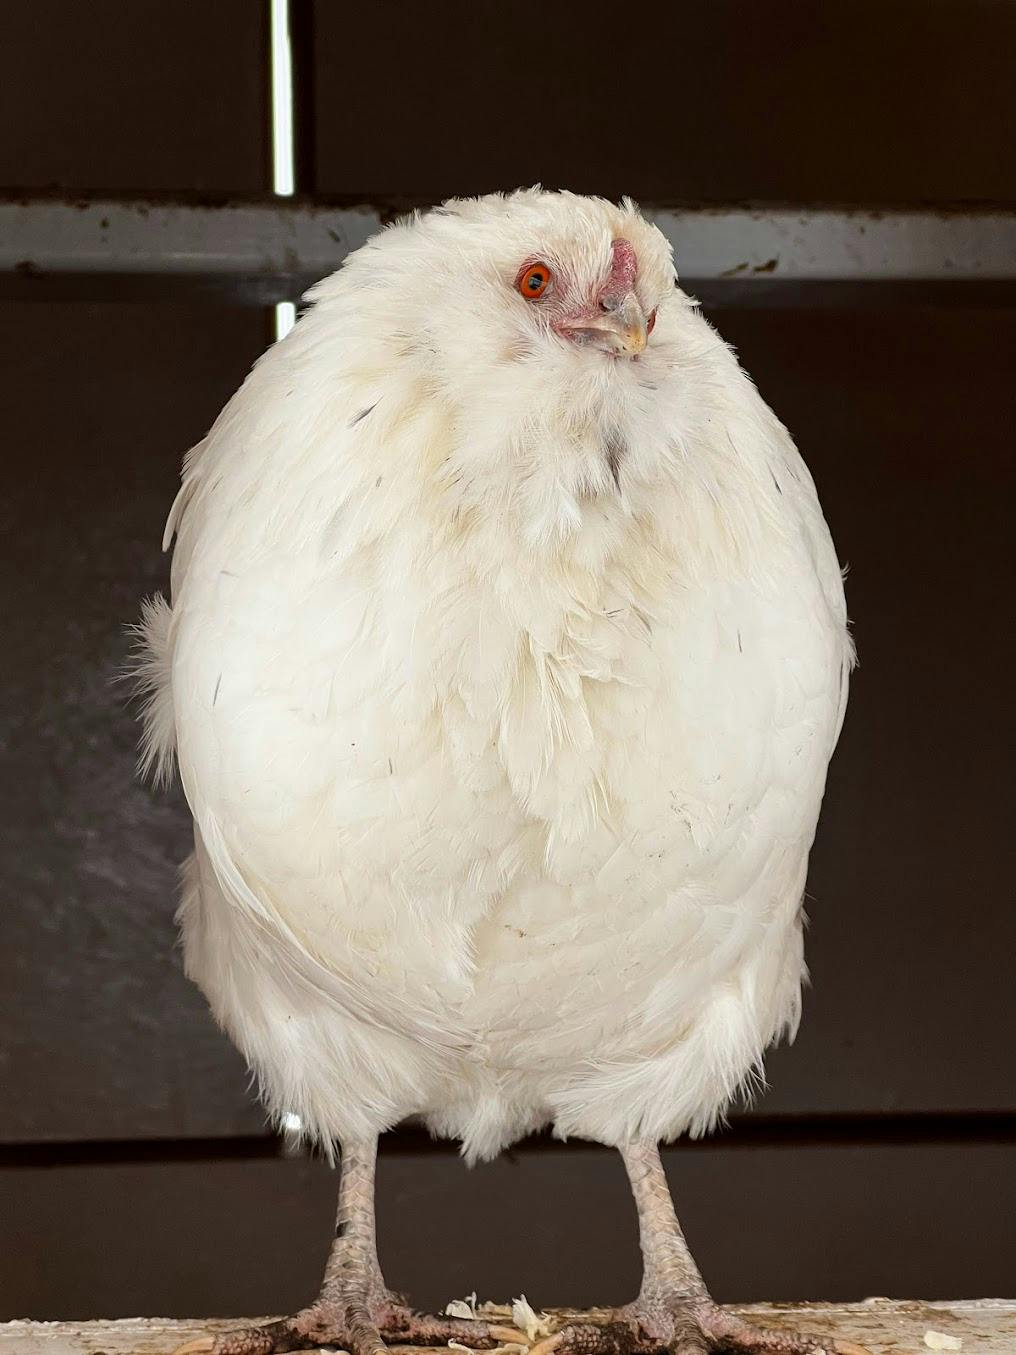 Our hen Dove standing in the coop chicken door